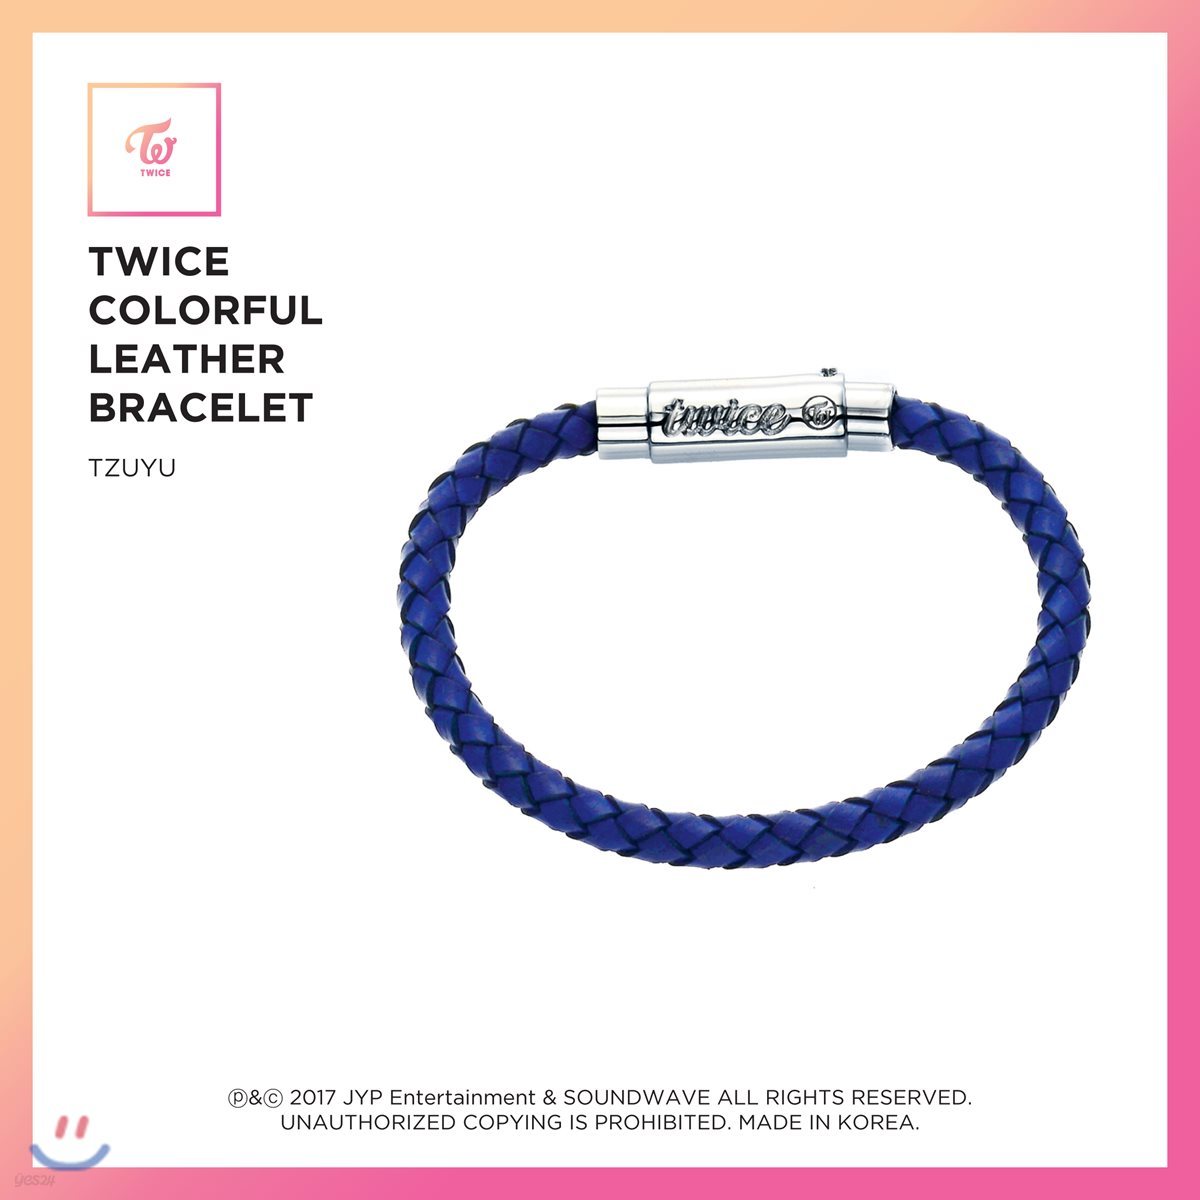 트와이스 (TWICE) - TWICE Colorful Leather Bracelet [Tzuyu]